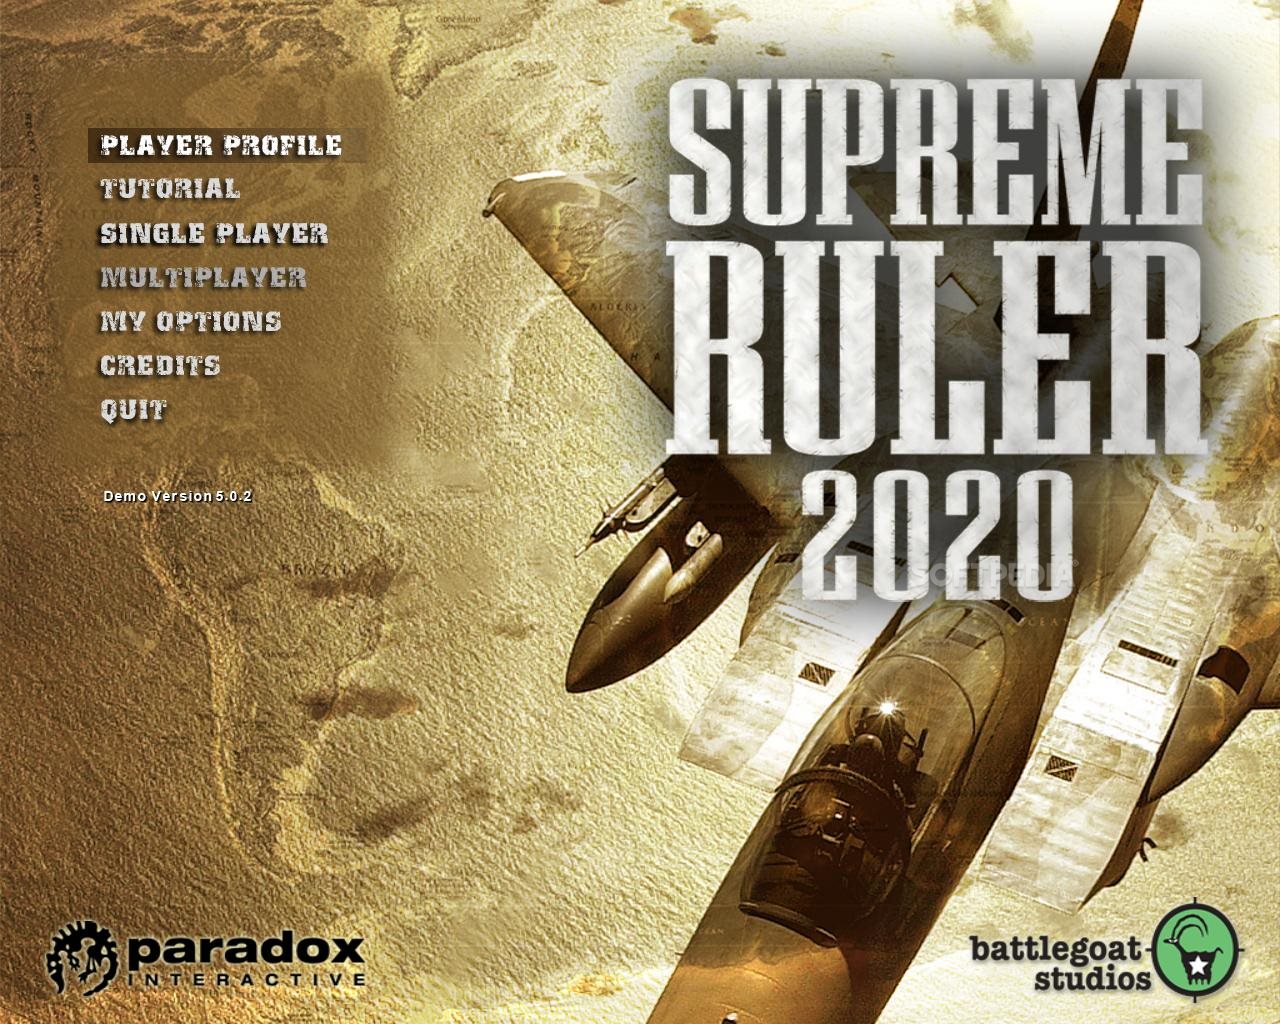 supreme ruler 2020 gold activation key